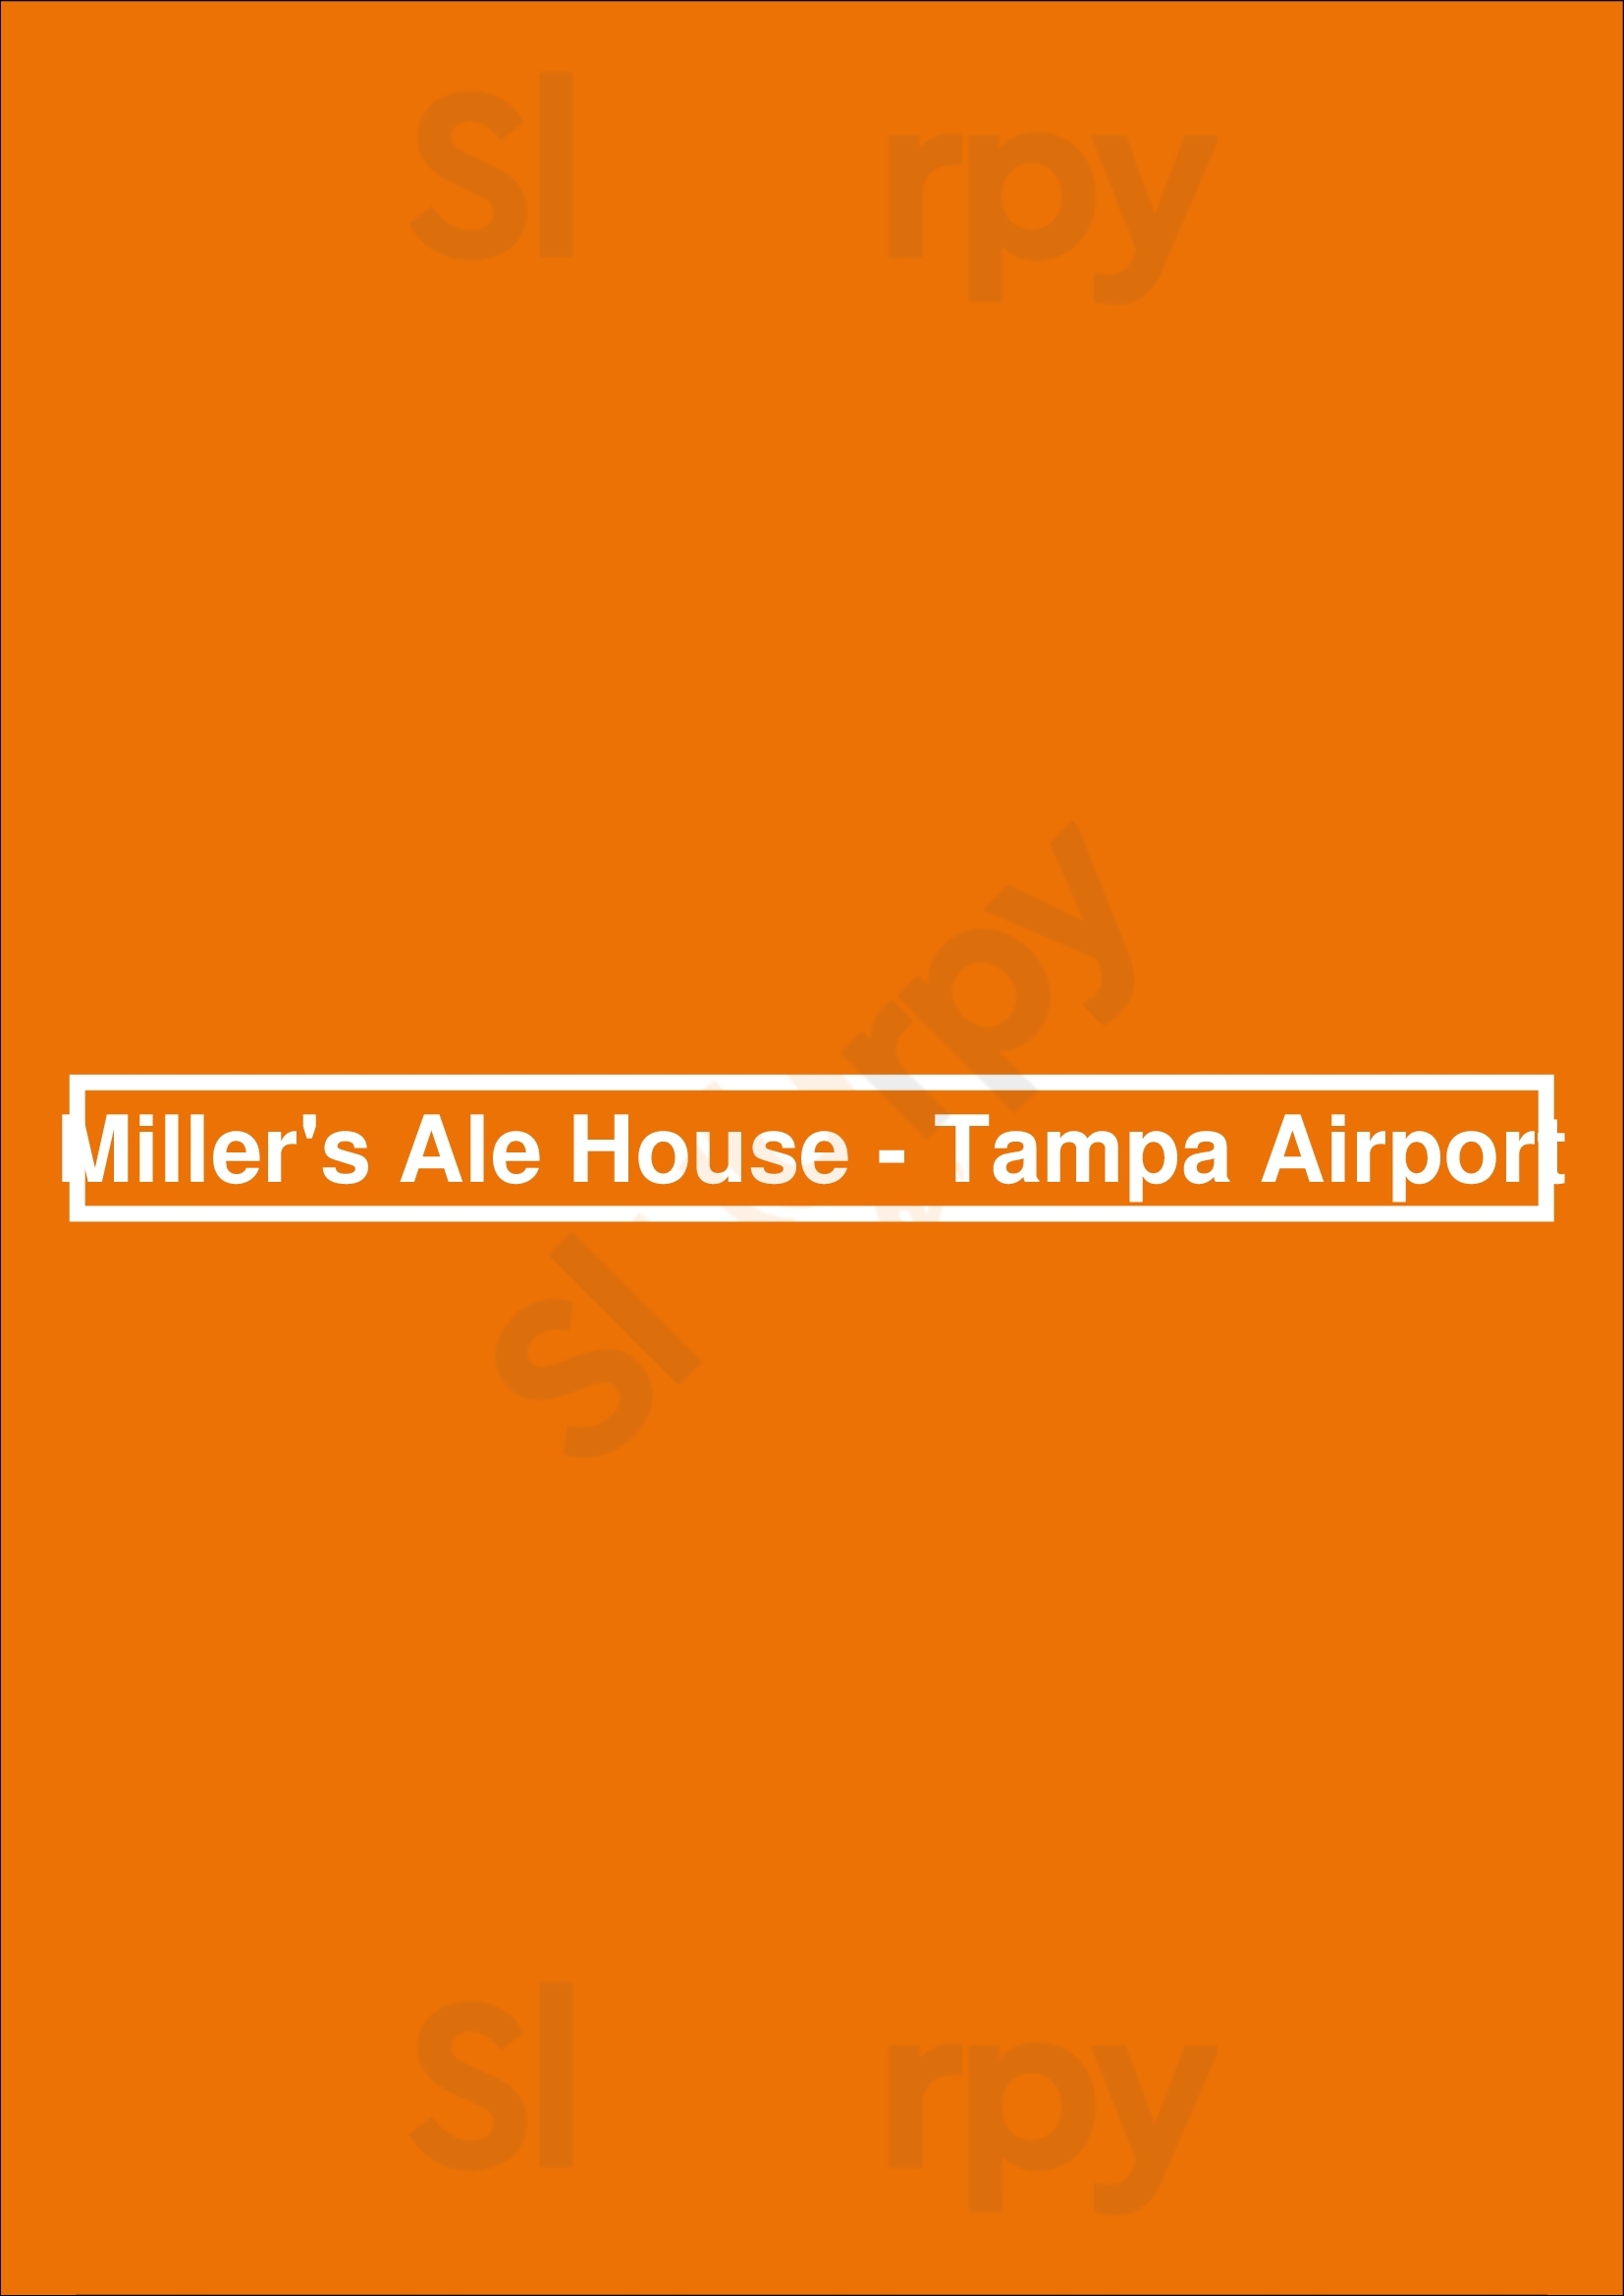 Miller's Ale House - Tampa Airport Tampa Menu - 1